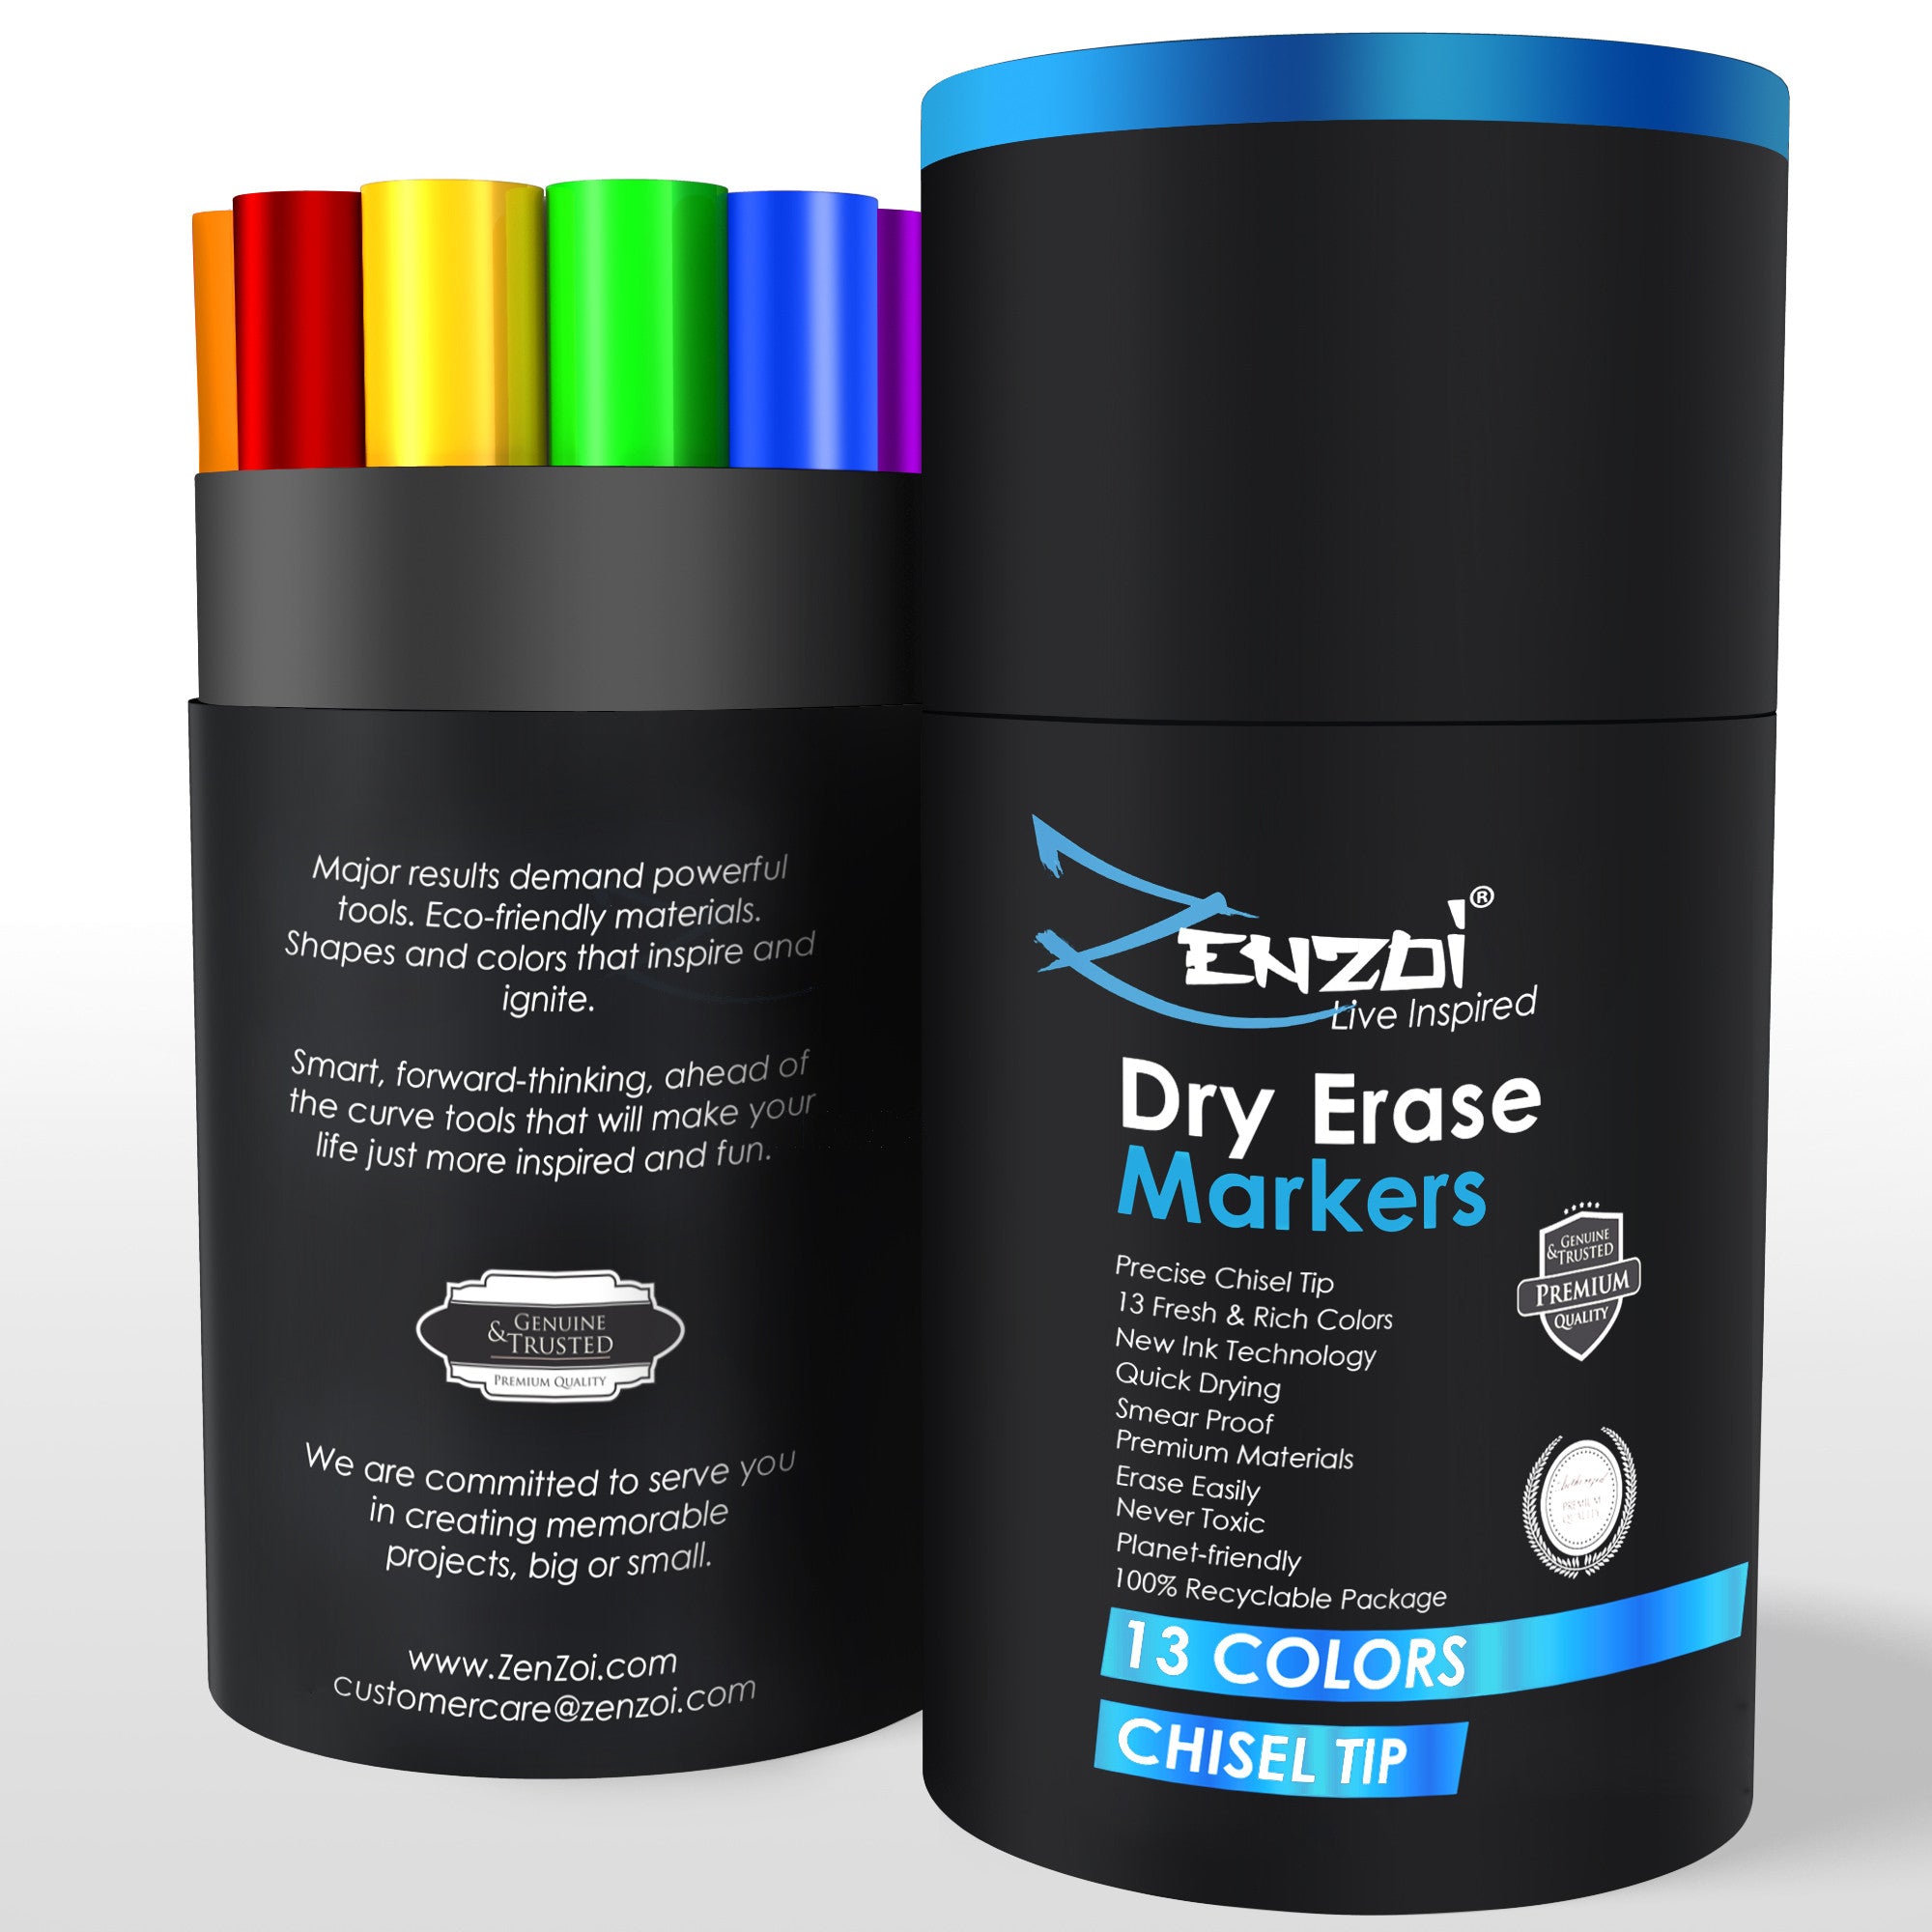 DELI 12 Colors Whiteboard Marker Set Non Toxic Dry Erase Marker Sign Fine  Nib Supply Office